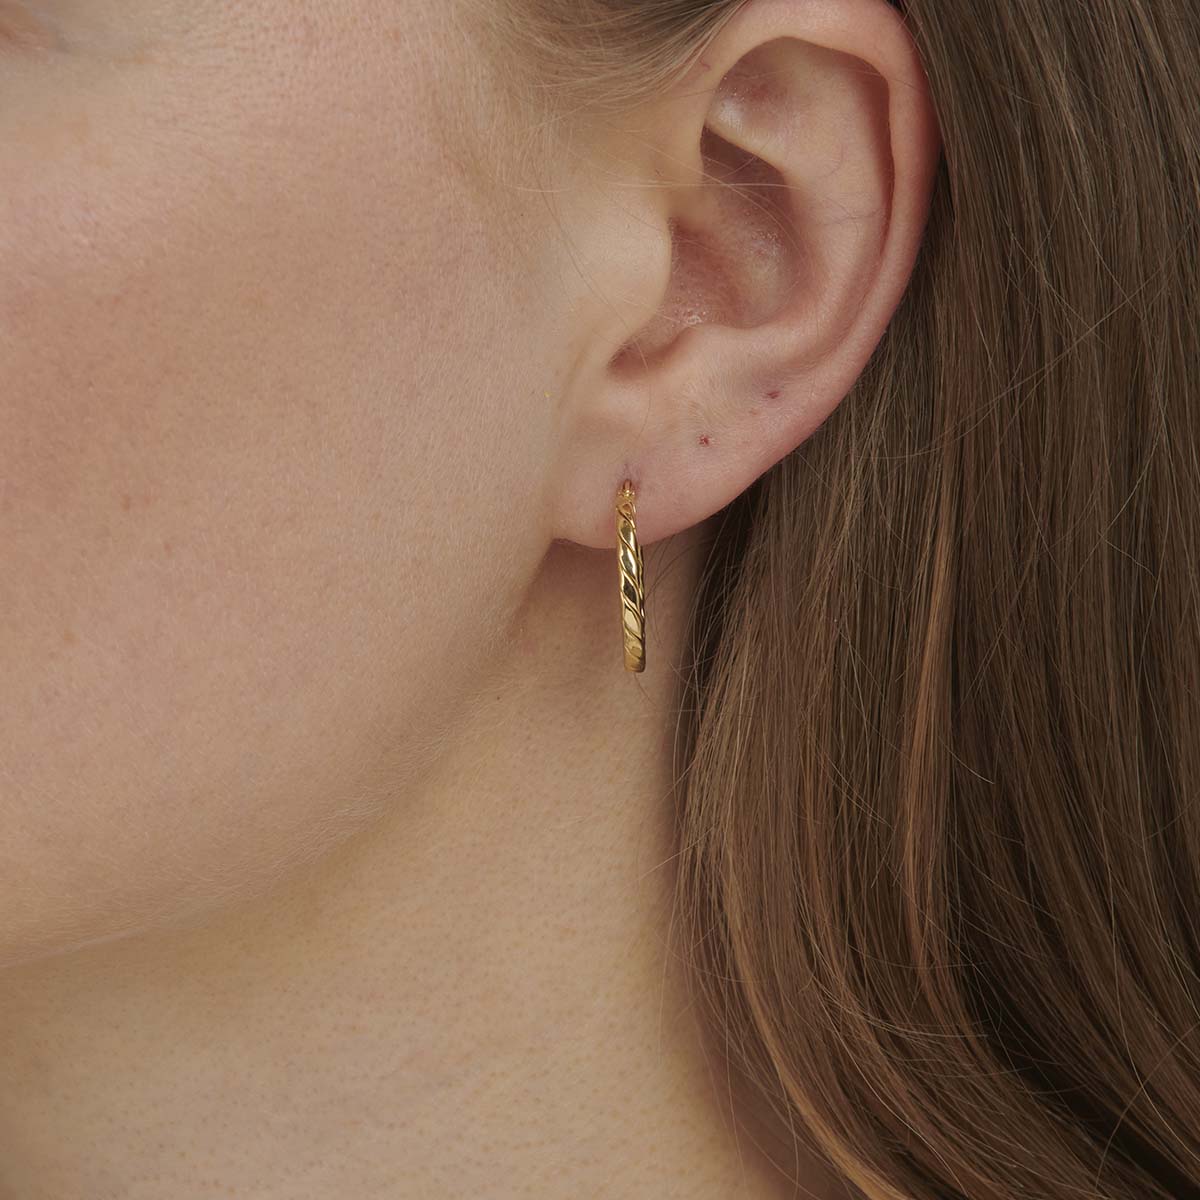 Medium Hoop Earrings in Gold | The Land of Salt